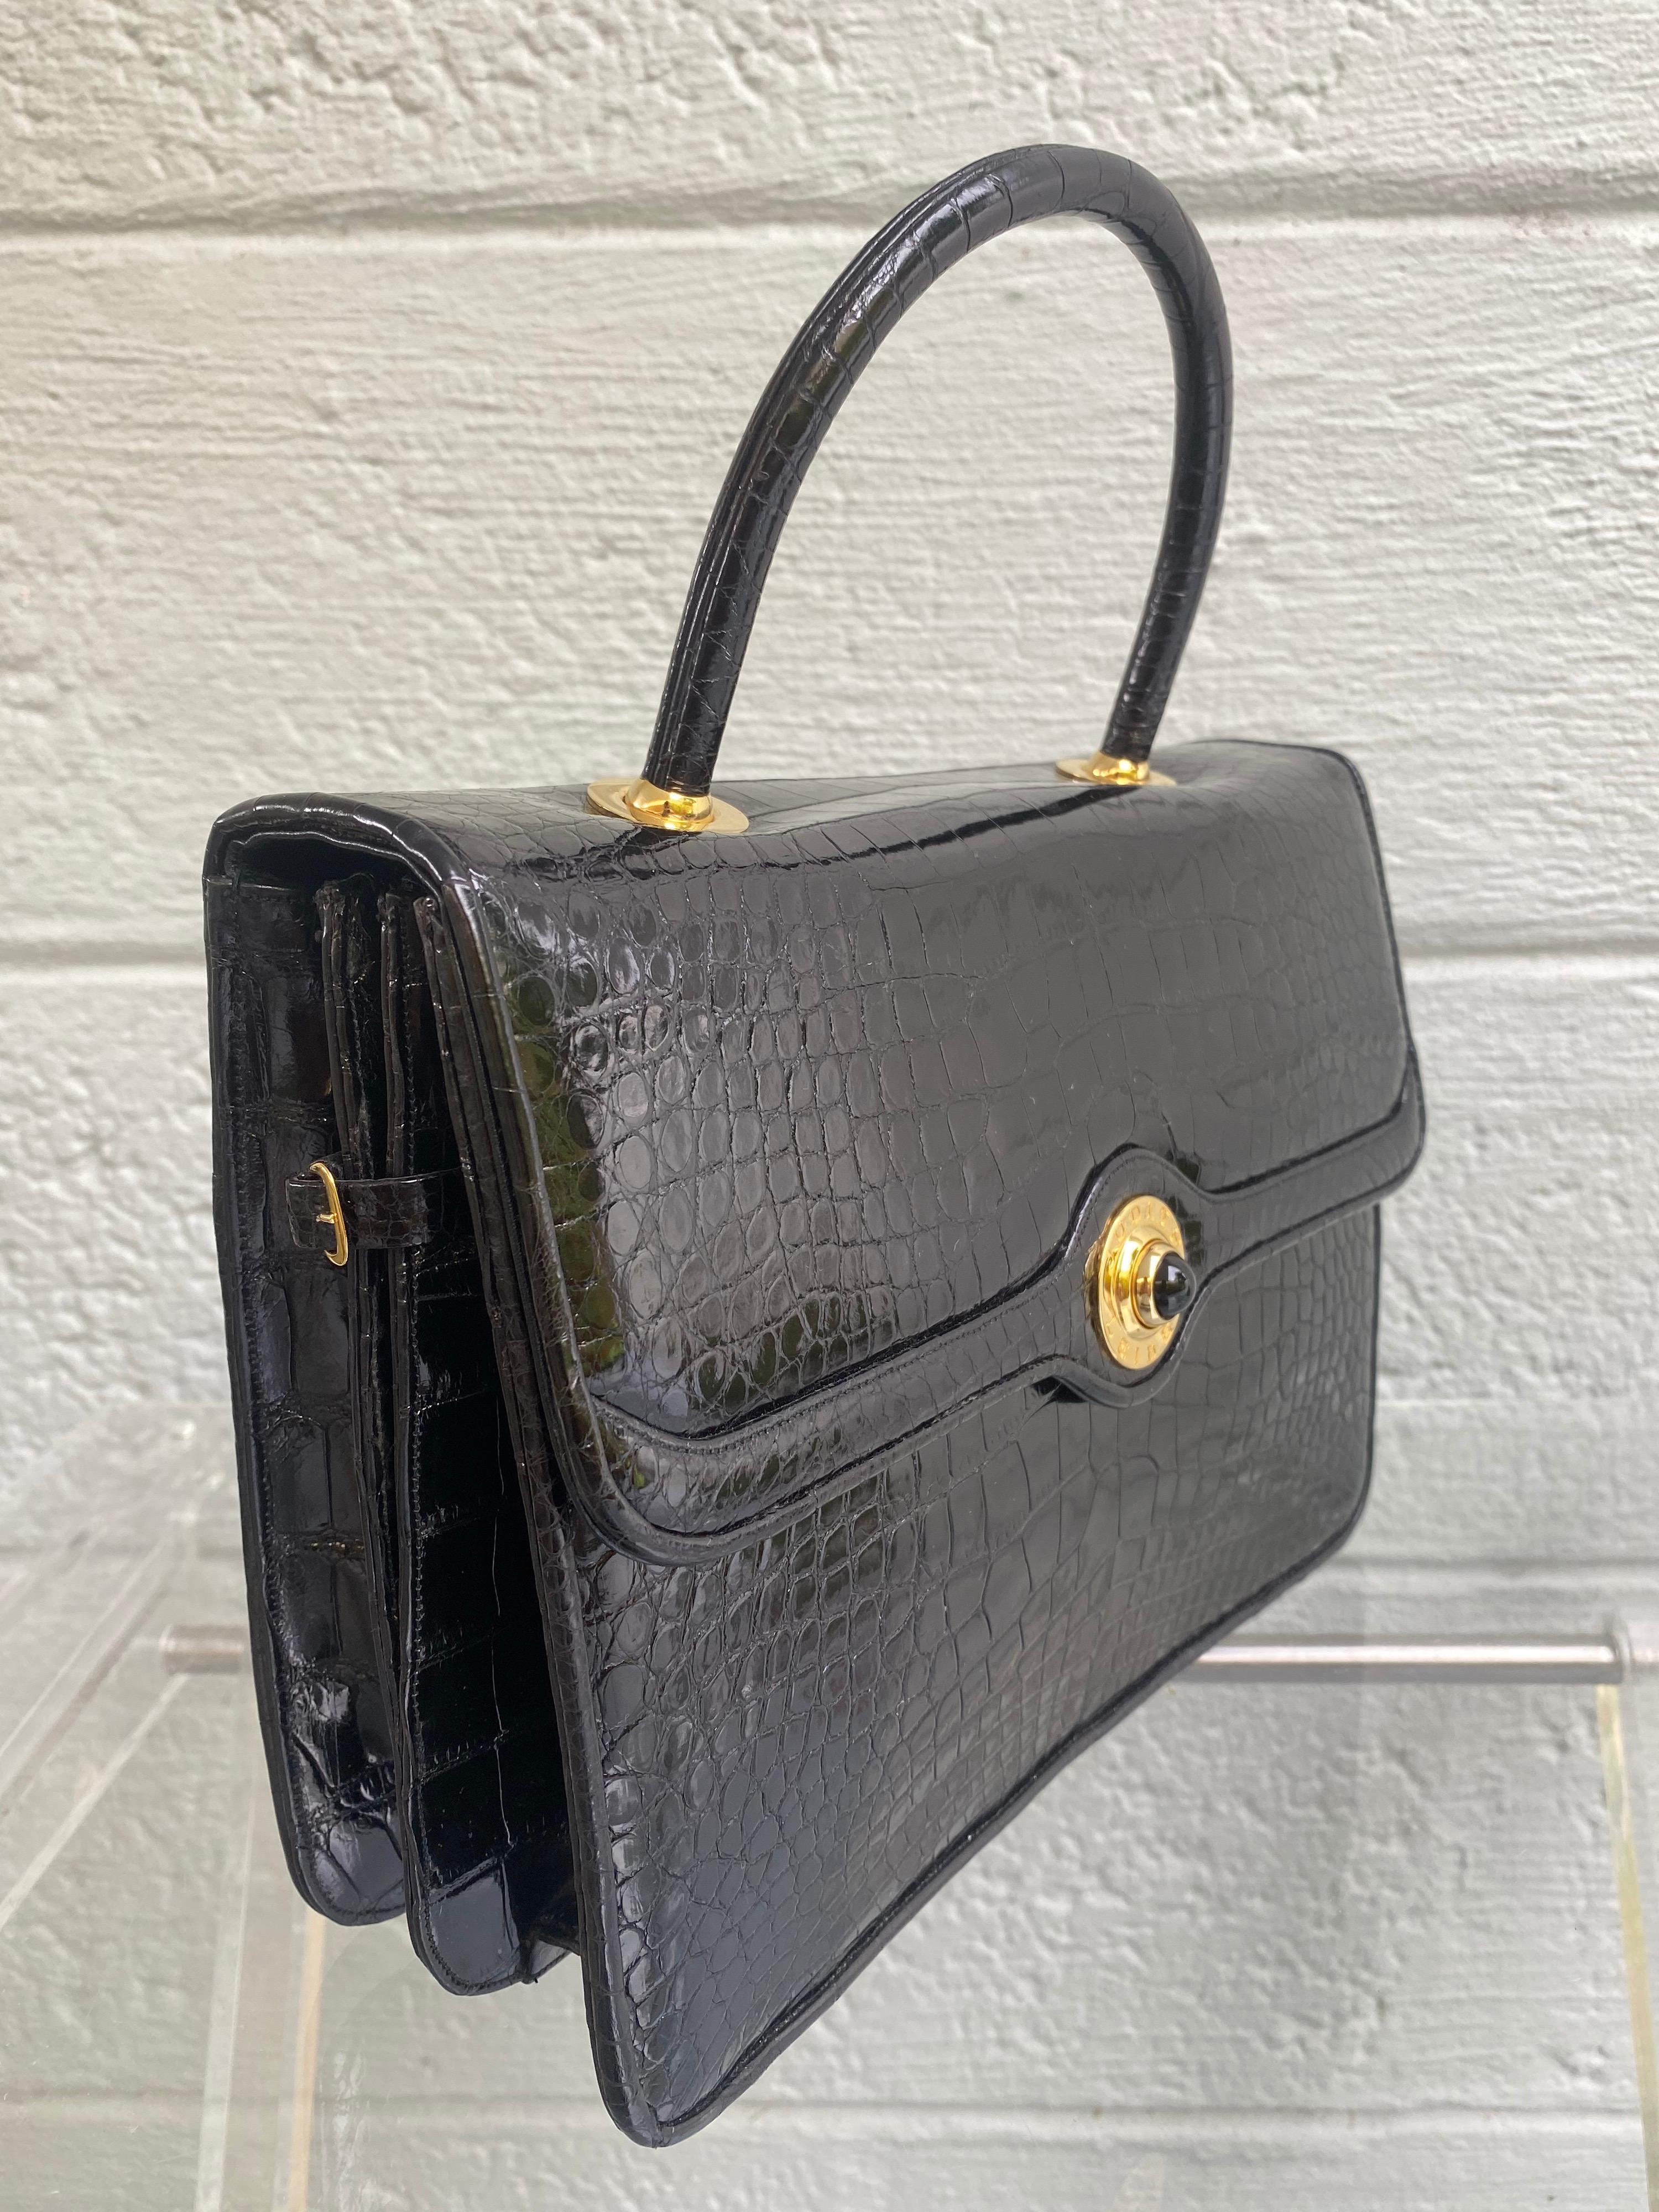 Die Alligator-Tasche im Stil der Vintage Kelly Flap von Judith Leiber ist eines der begehrtesten und exklusivsten Stücke des berühmten Luxusgüterhauses. Diese Überschlagtasche ist mit glasiertem, schwarzem, glänzendem Alligator gebadet. Judith